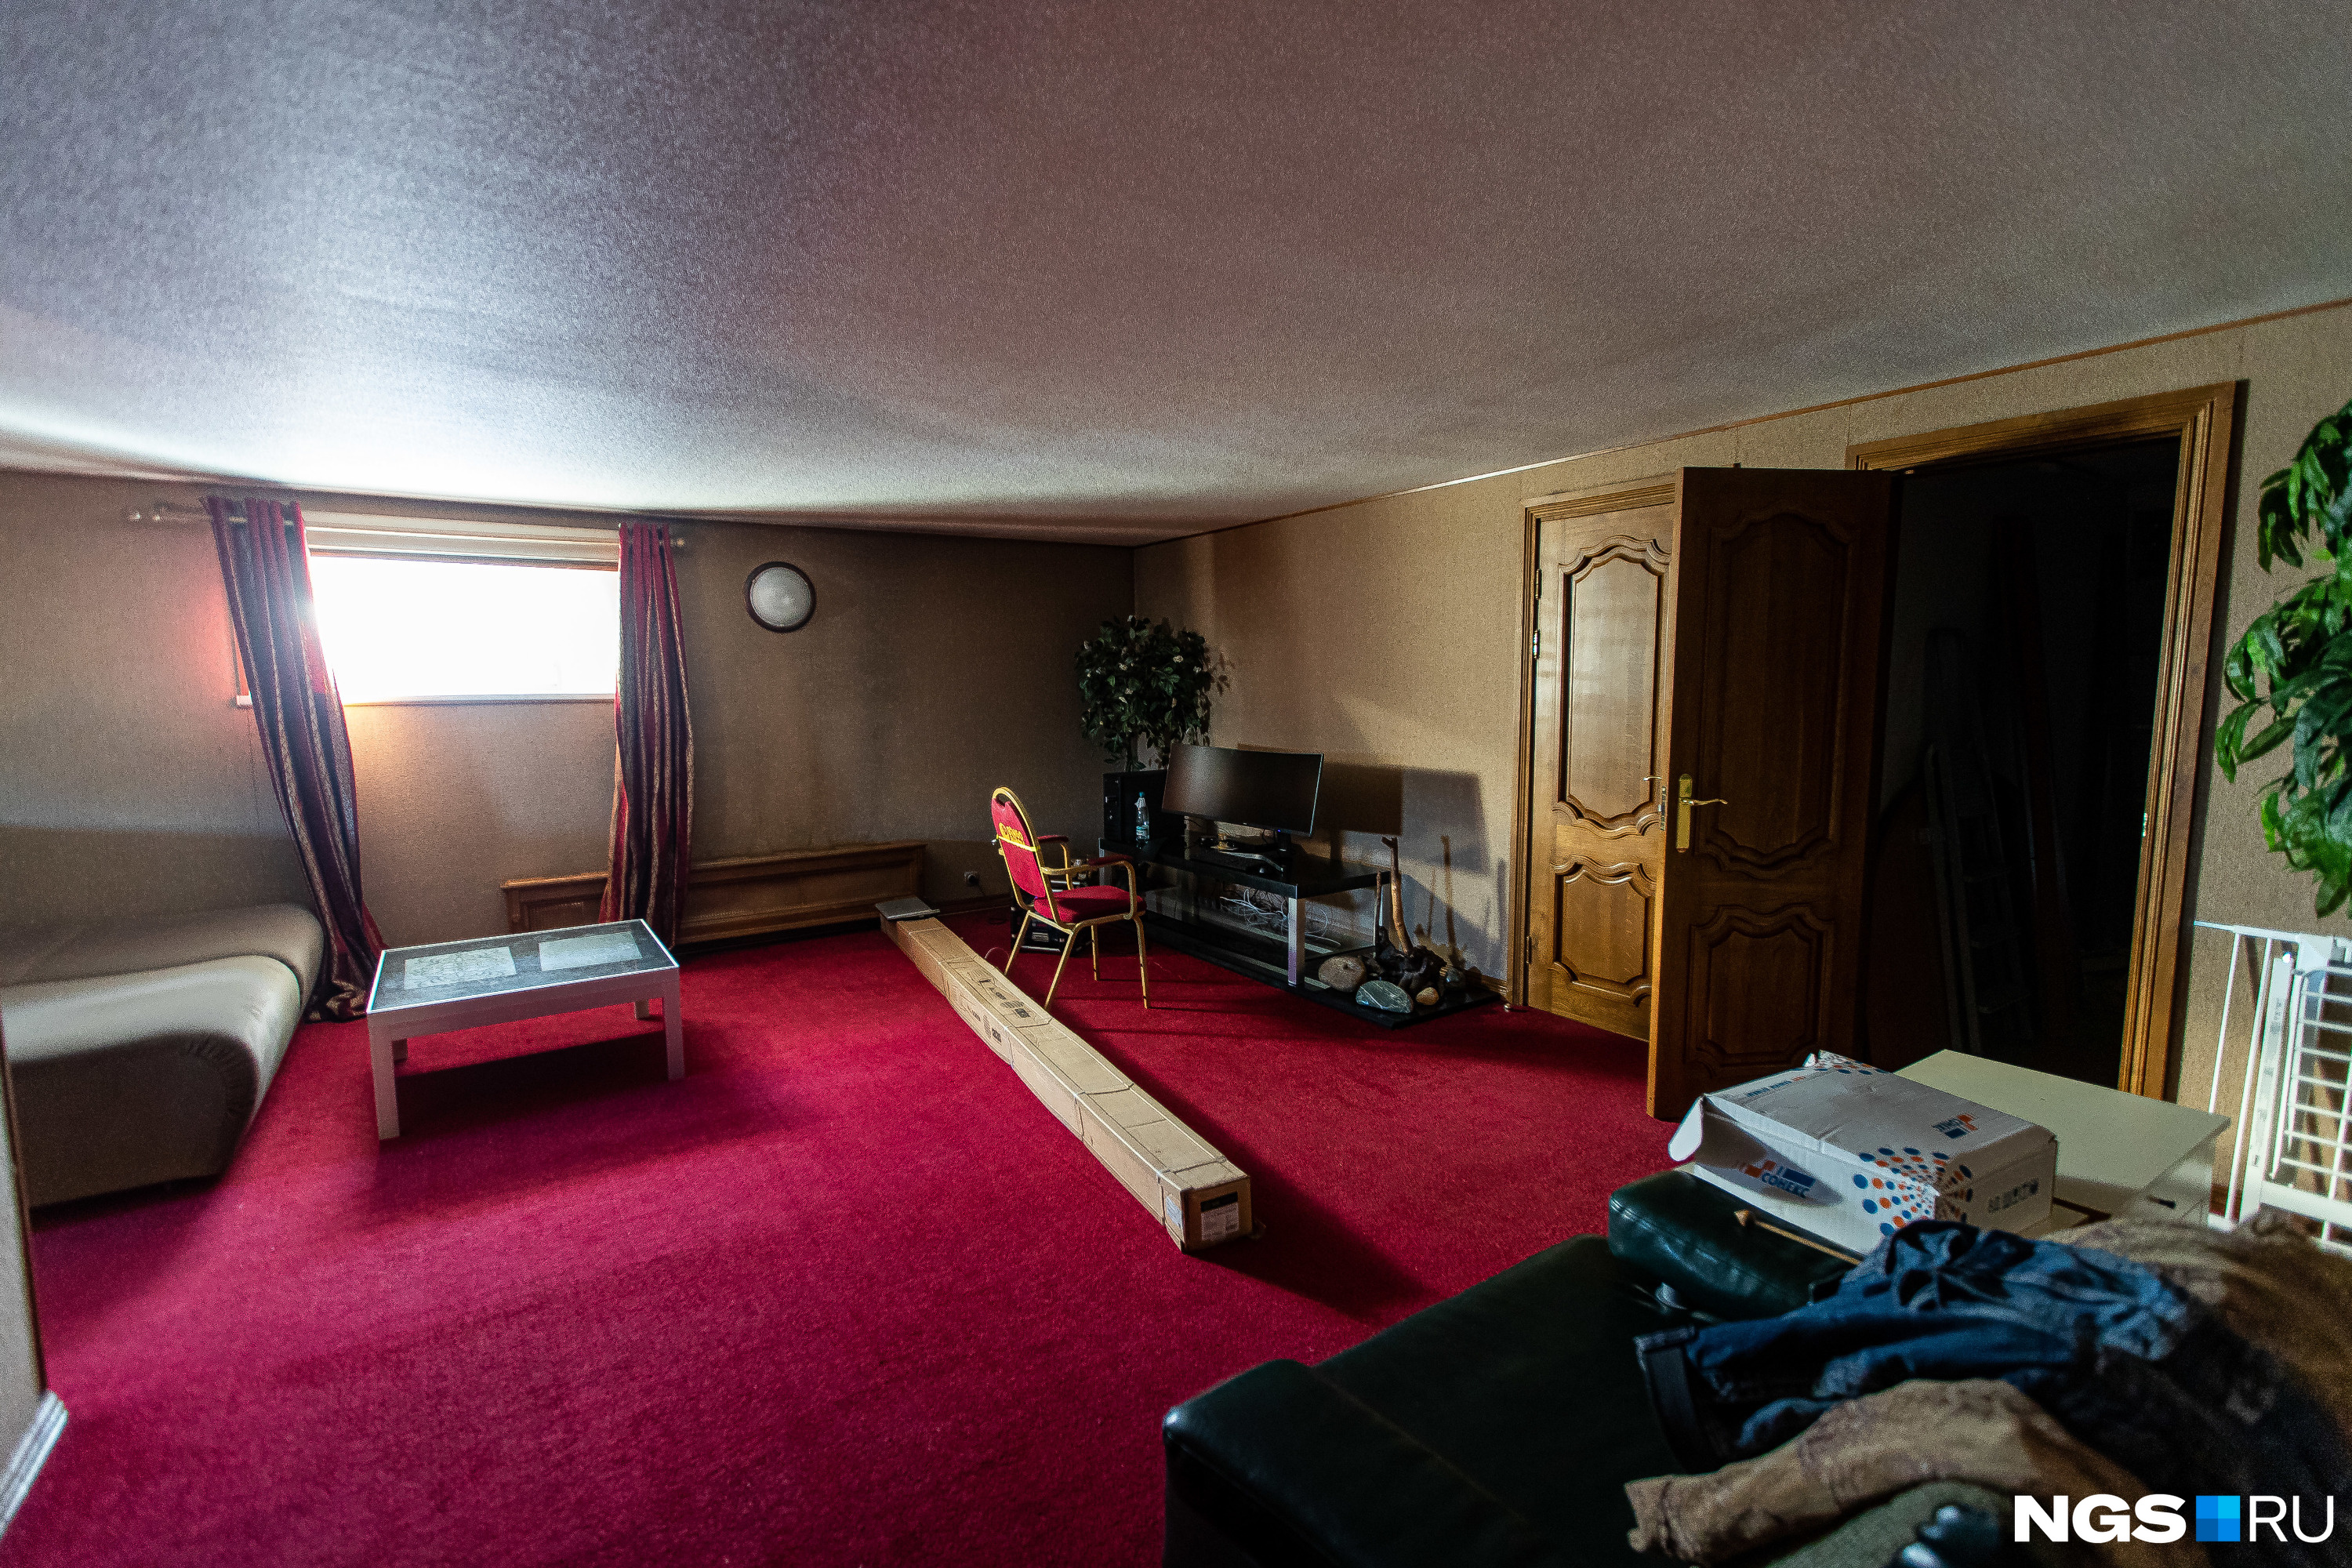 Сейчас в некоторых помещениях квартиры идет небольшой ремонт, после которого хозяин собирается сдавать недвижимость в аренду